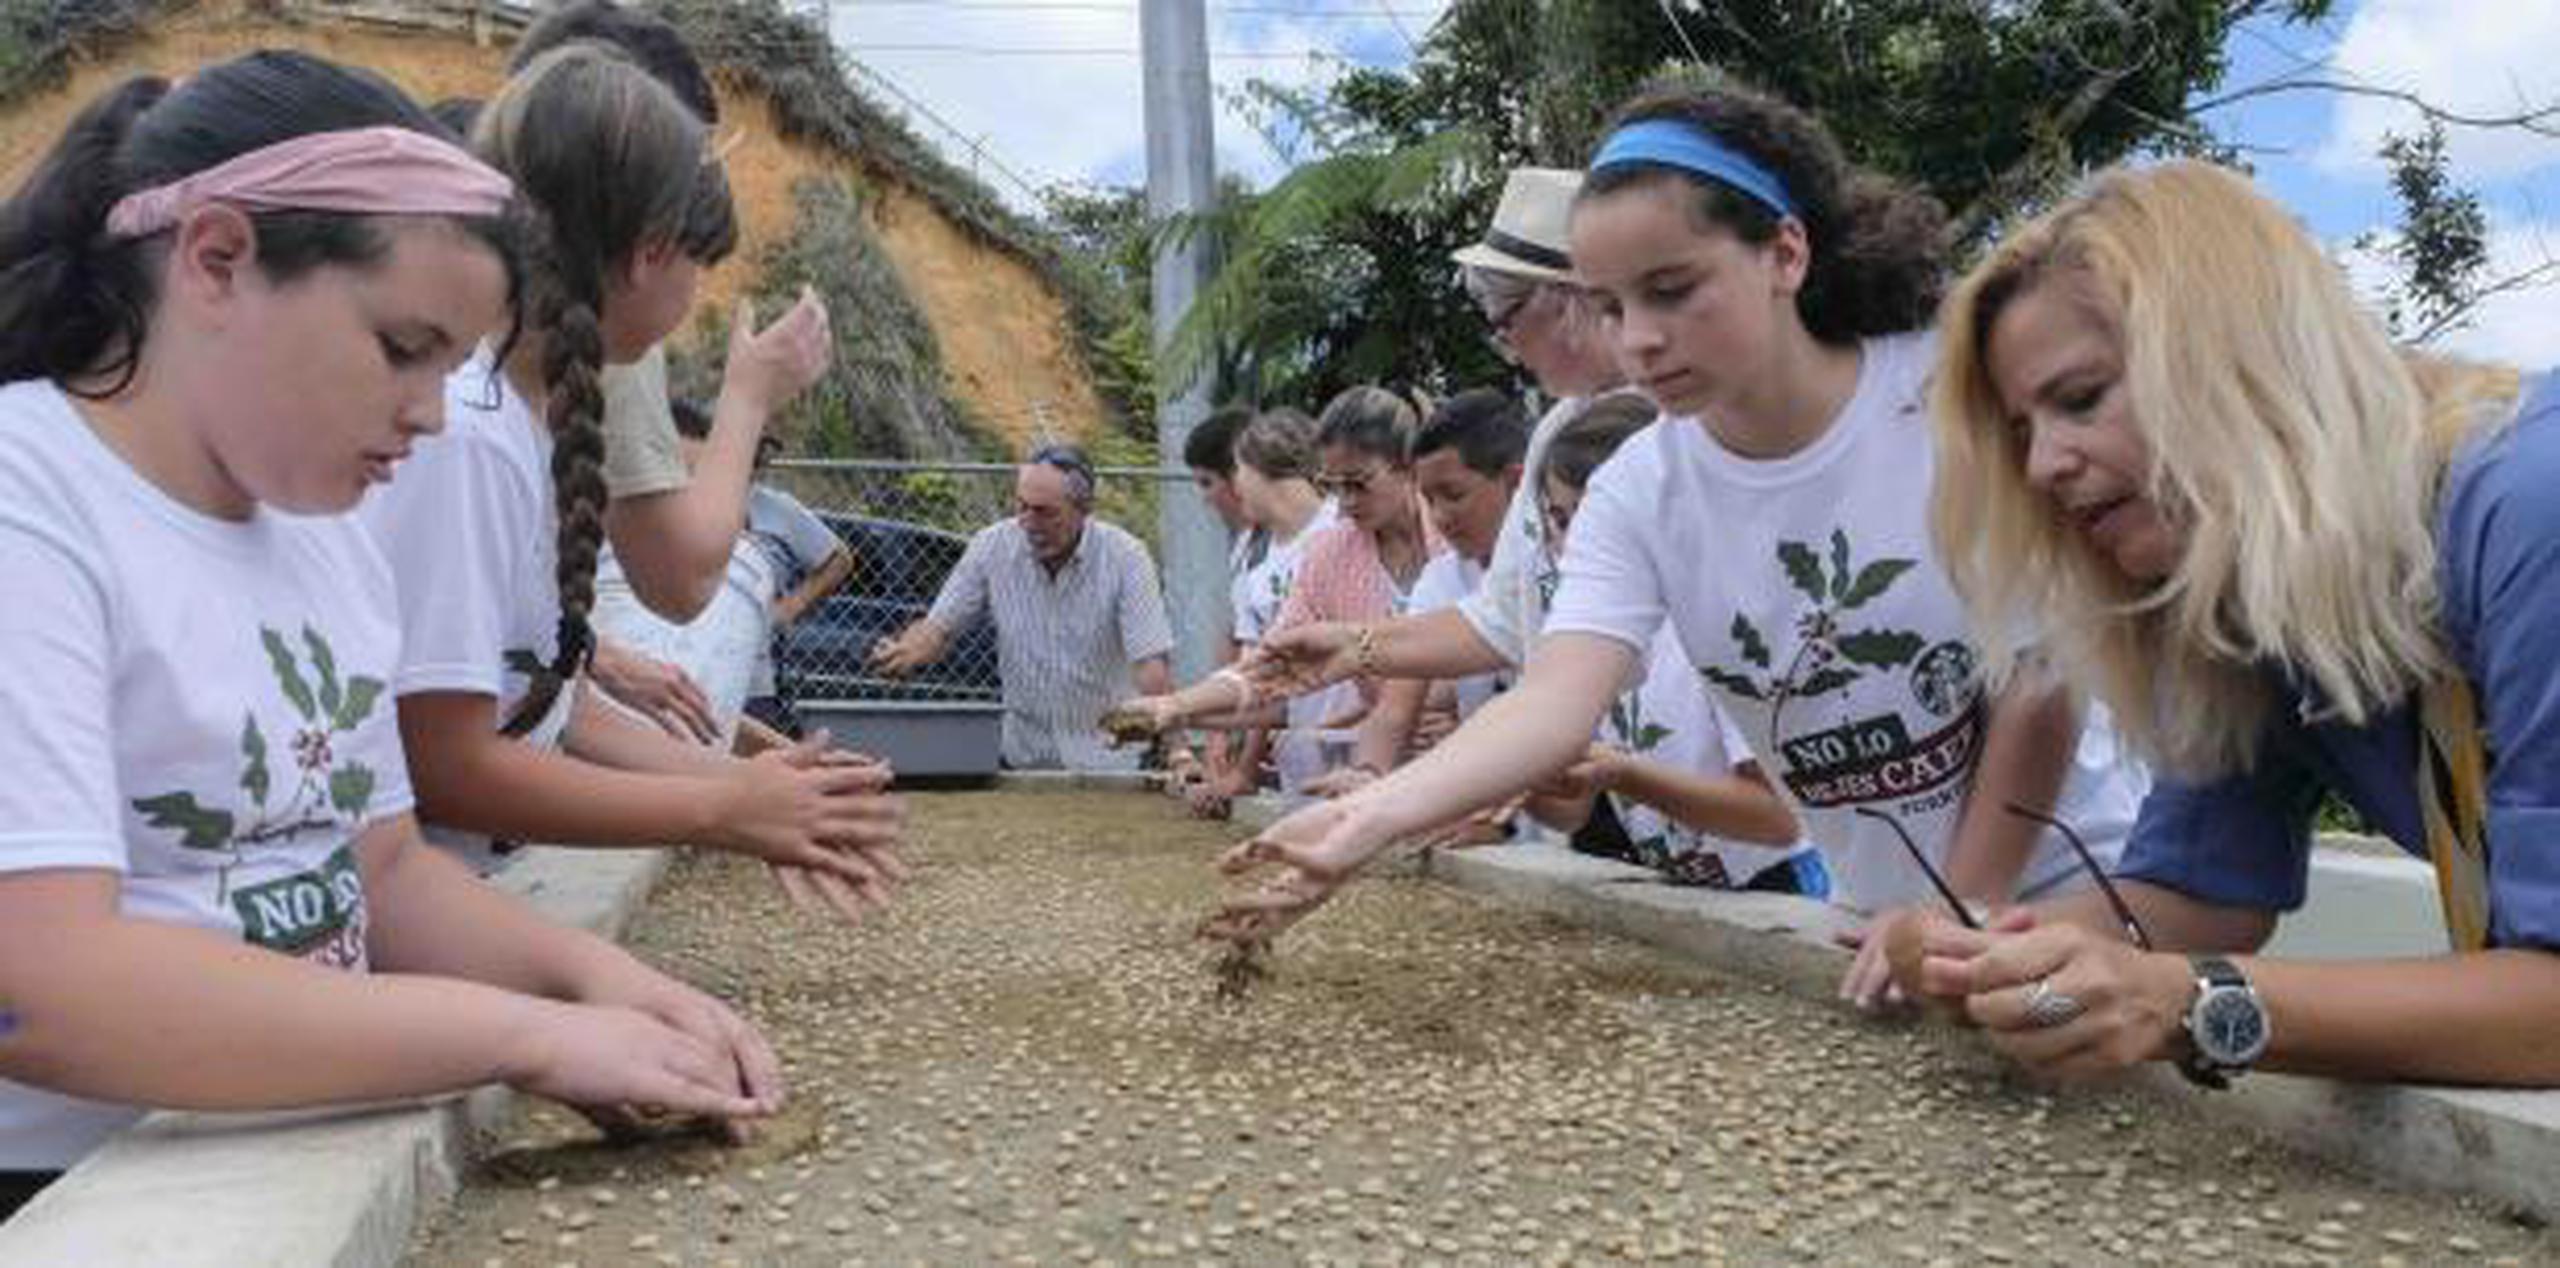 El proyecto tiene varias etapas, desde la germinación de la semilla del café, el cuido de la planta y su eventual distribución a los agricultores de la zona. (gerald.lopez@gfrmedia.com)